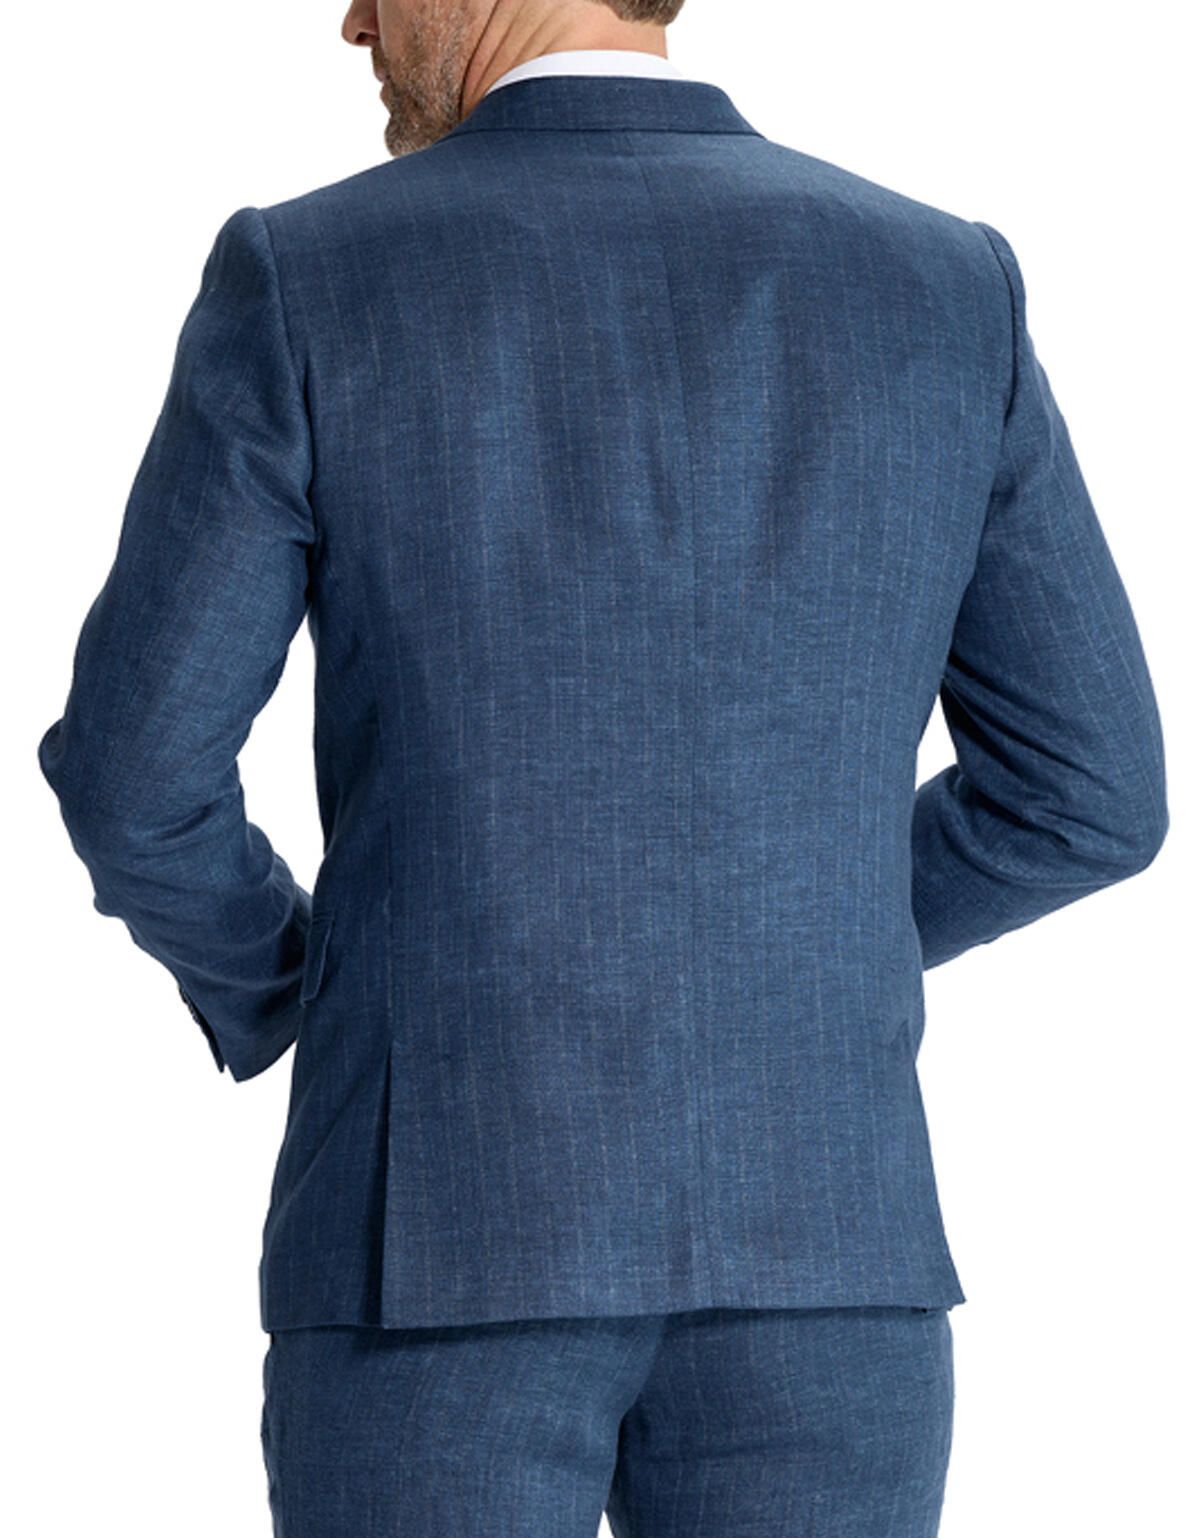 Пиджак мужской льняной  W.Wegener | купить в интернет-магазине Olymp-Men